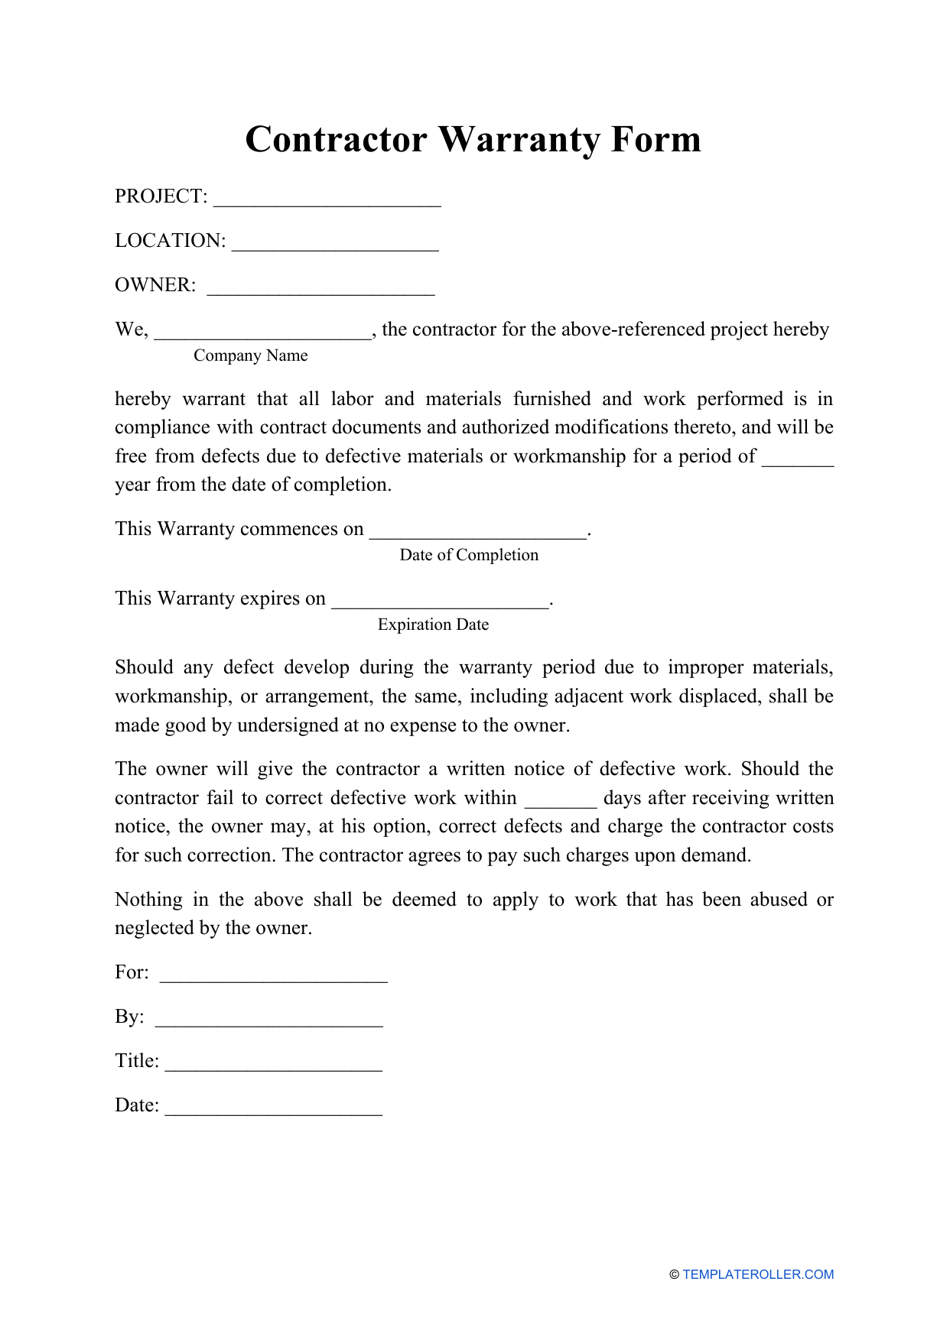 Contractor Warranty Form, Page 1